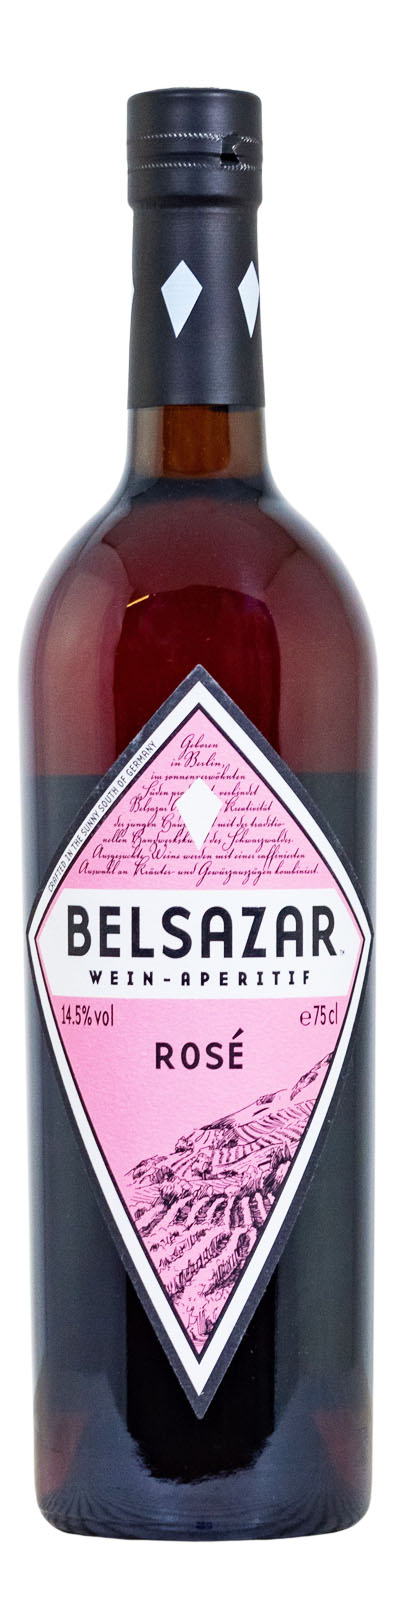 Belsazar Rose Wein-Aperitif - 0,75L 14,5% vol